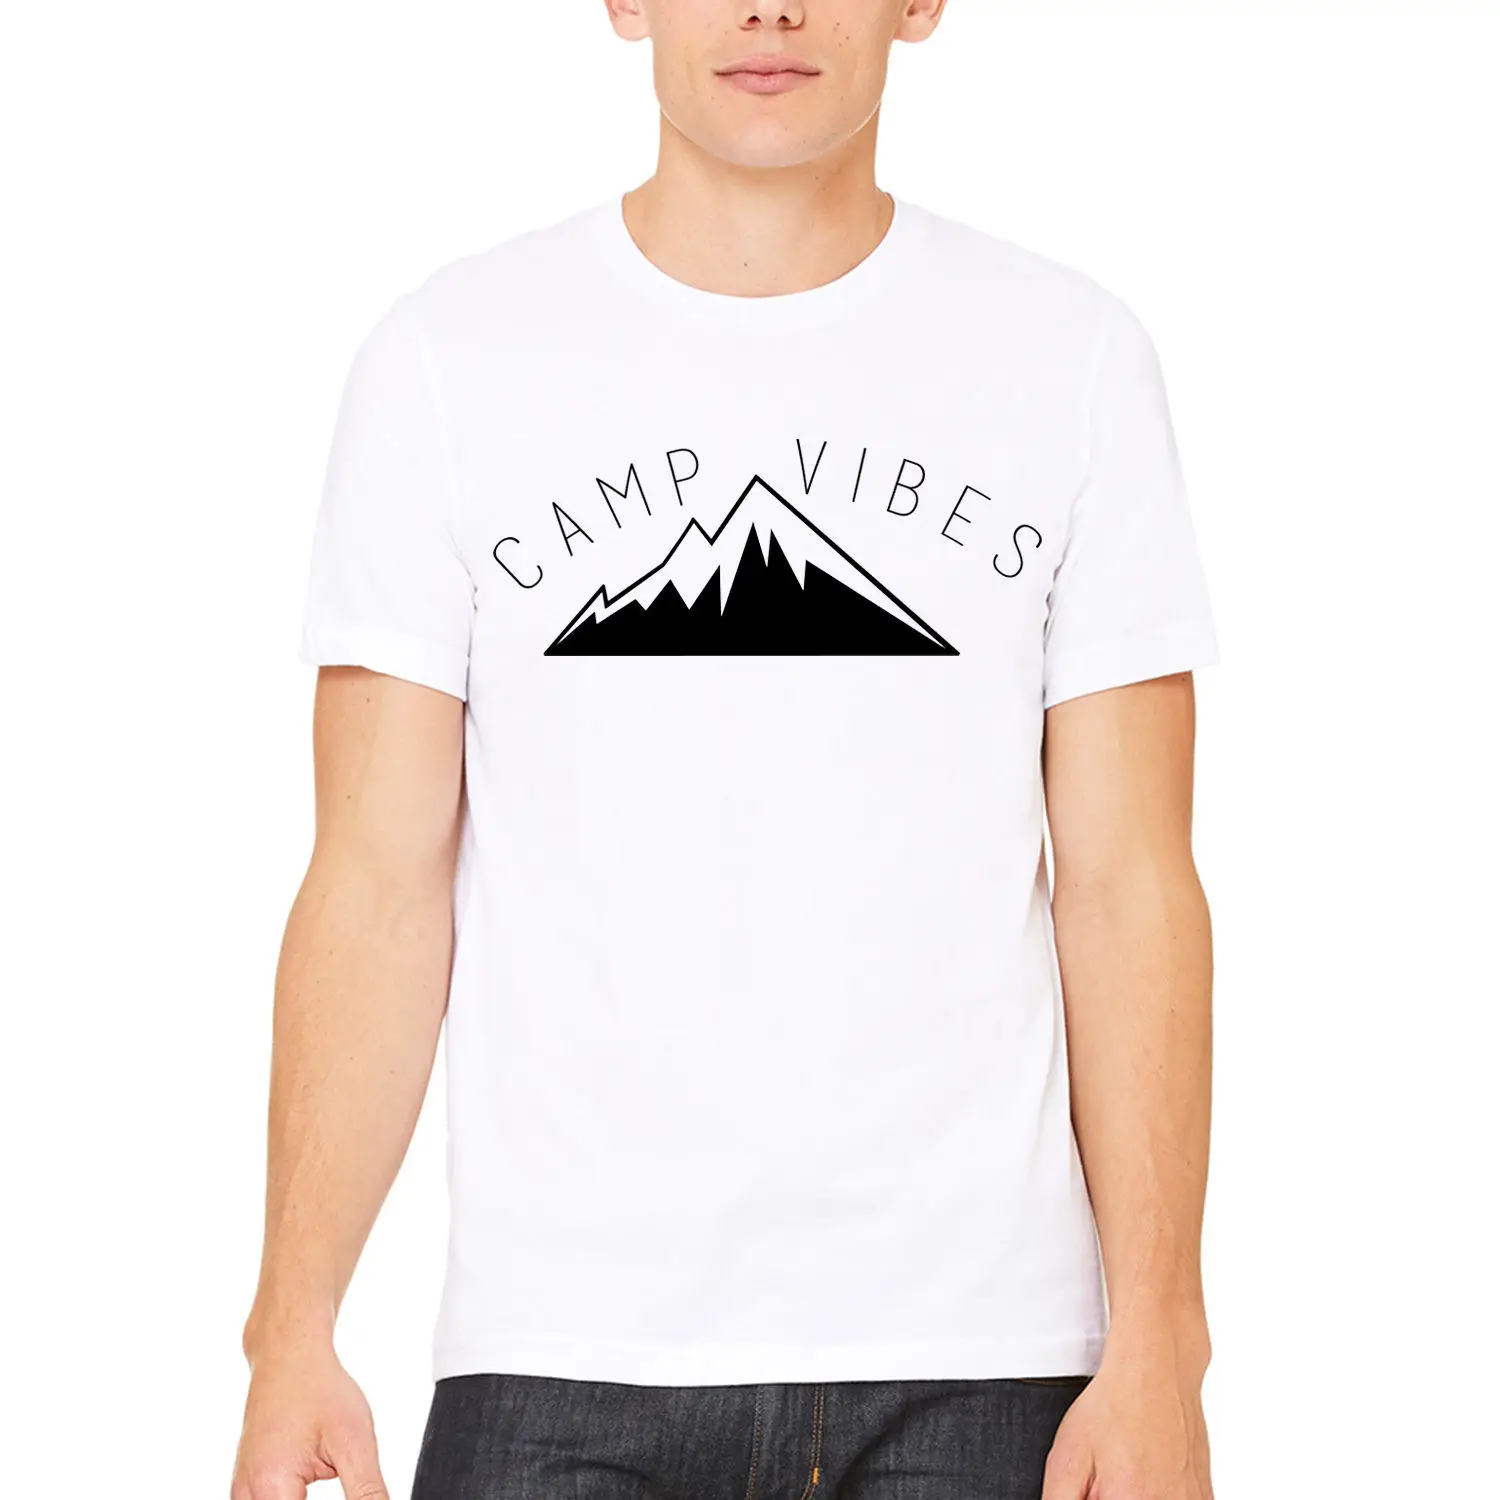 Мужская футболка 2019 новейшая Camp Vibes унисекс футболка Приключения Swag печатная белая футболка Базовая рубашка